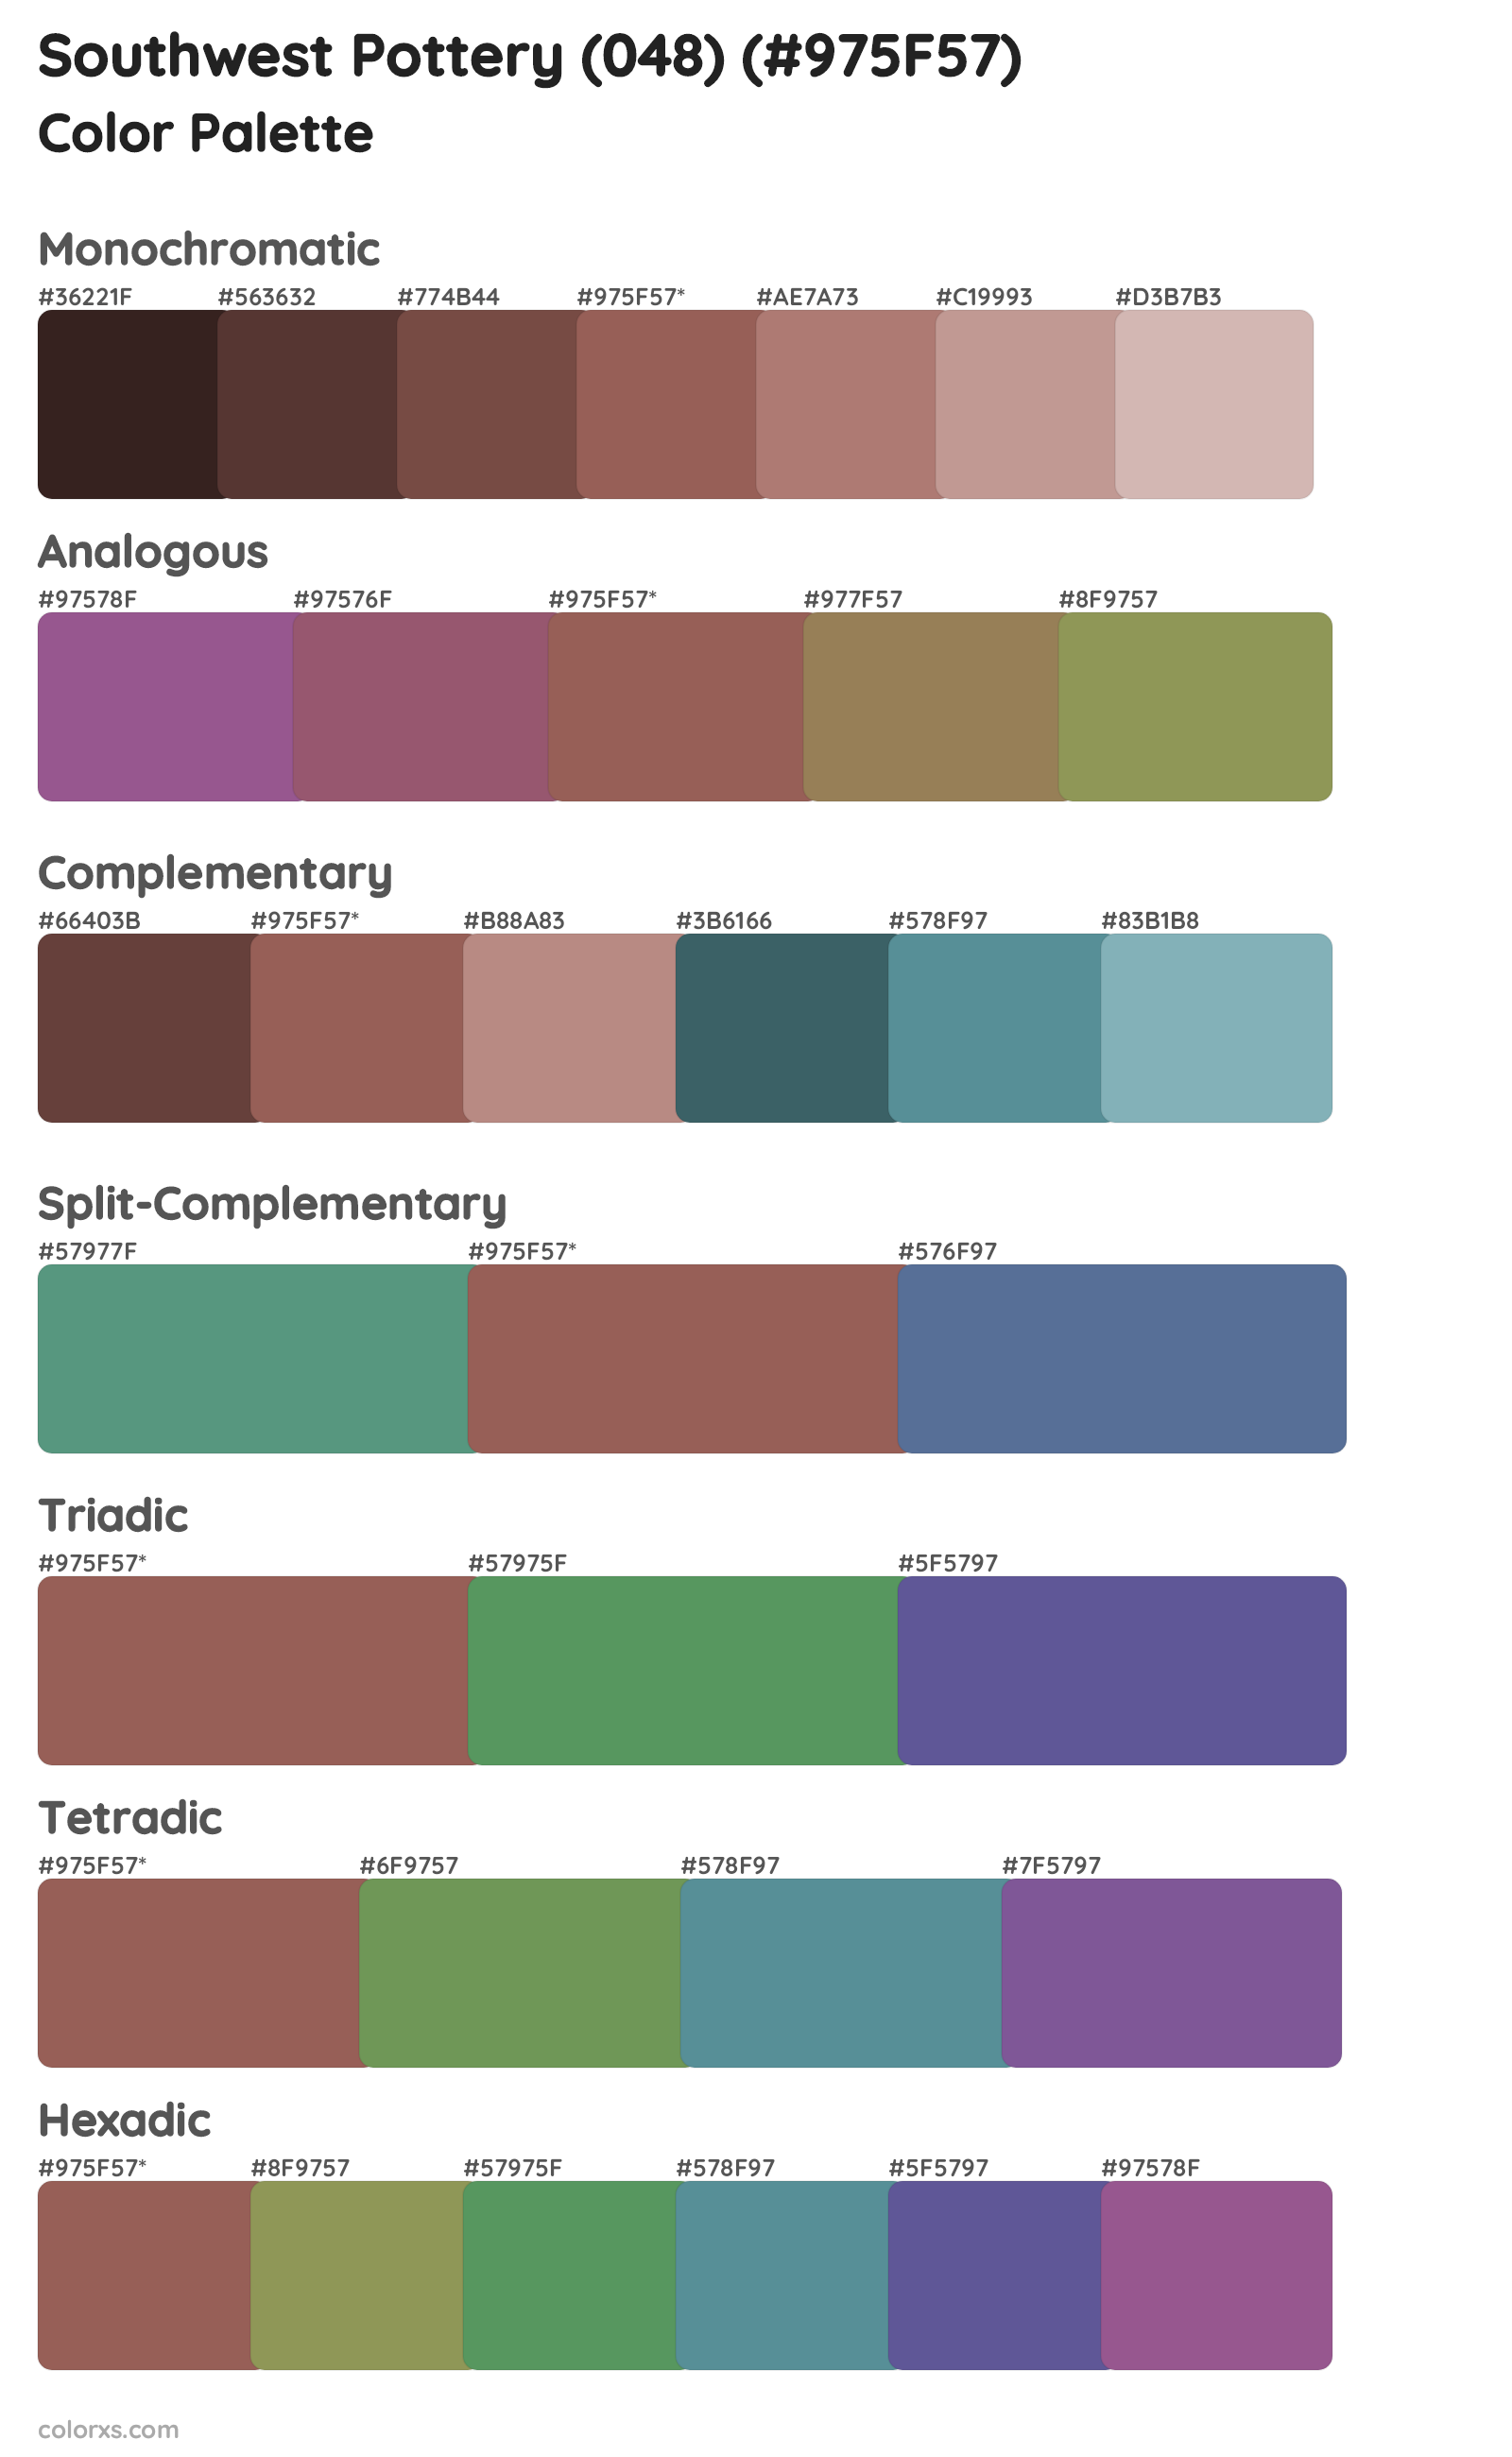 Southwest Pottery (048) Color Scheme Palettes